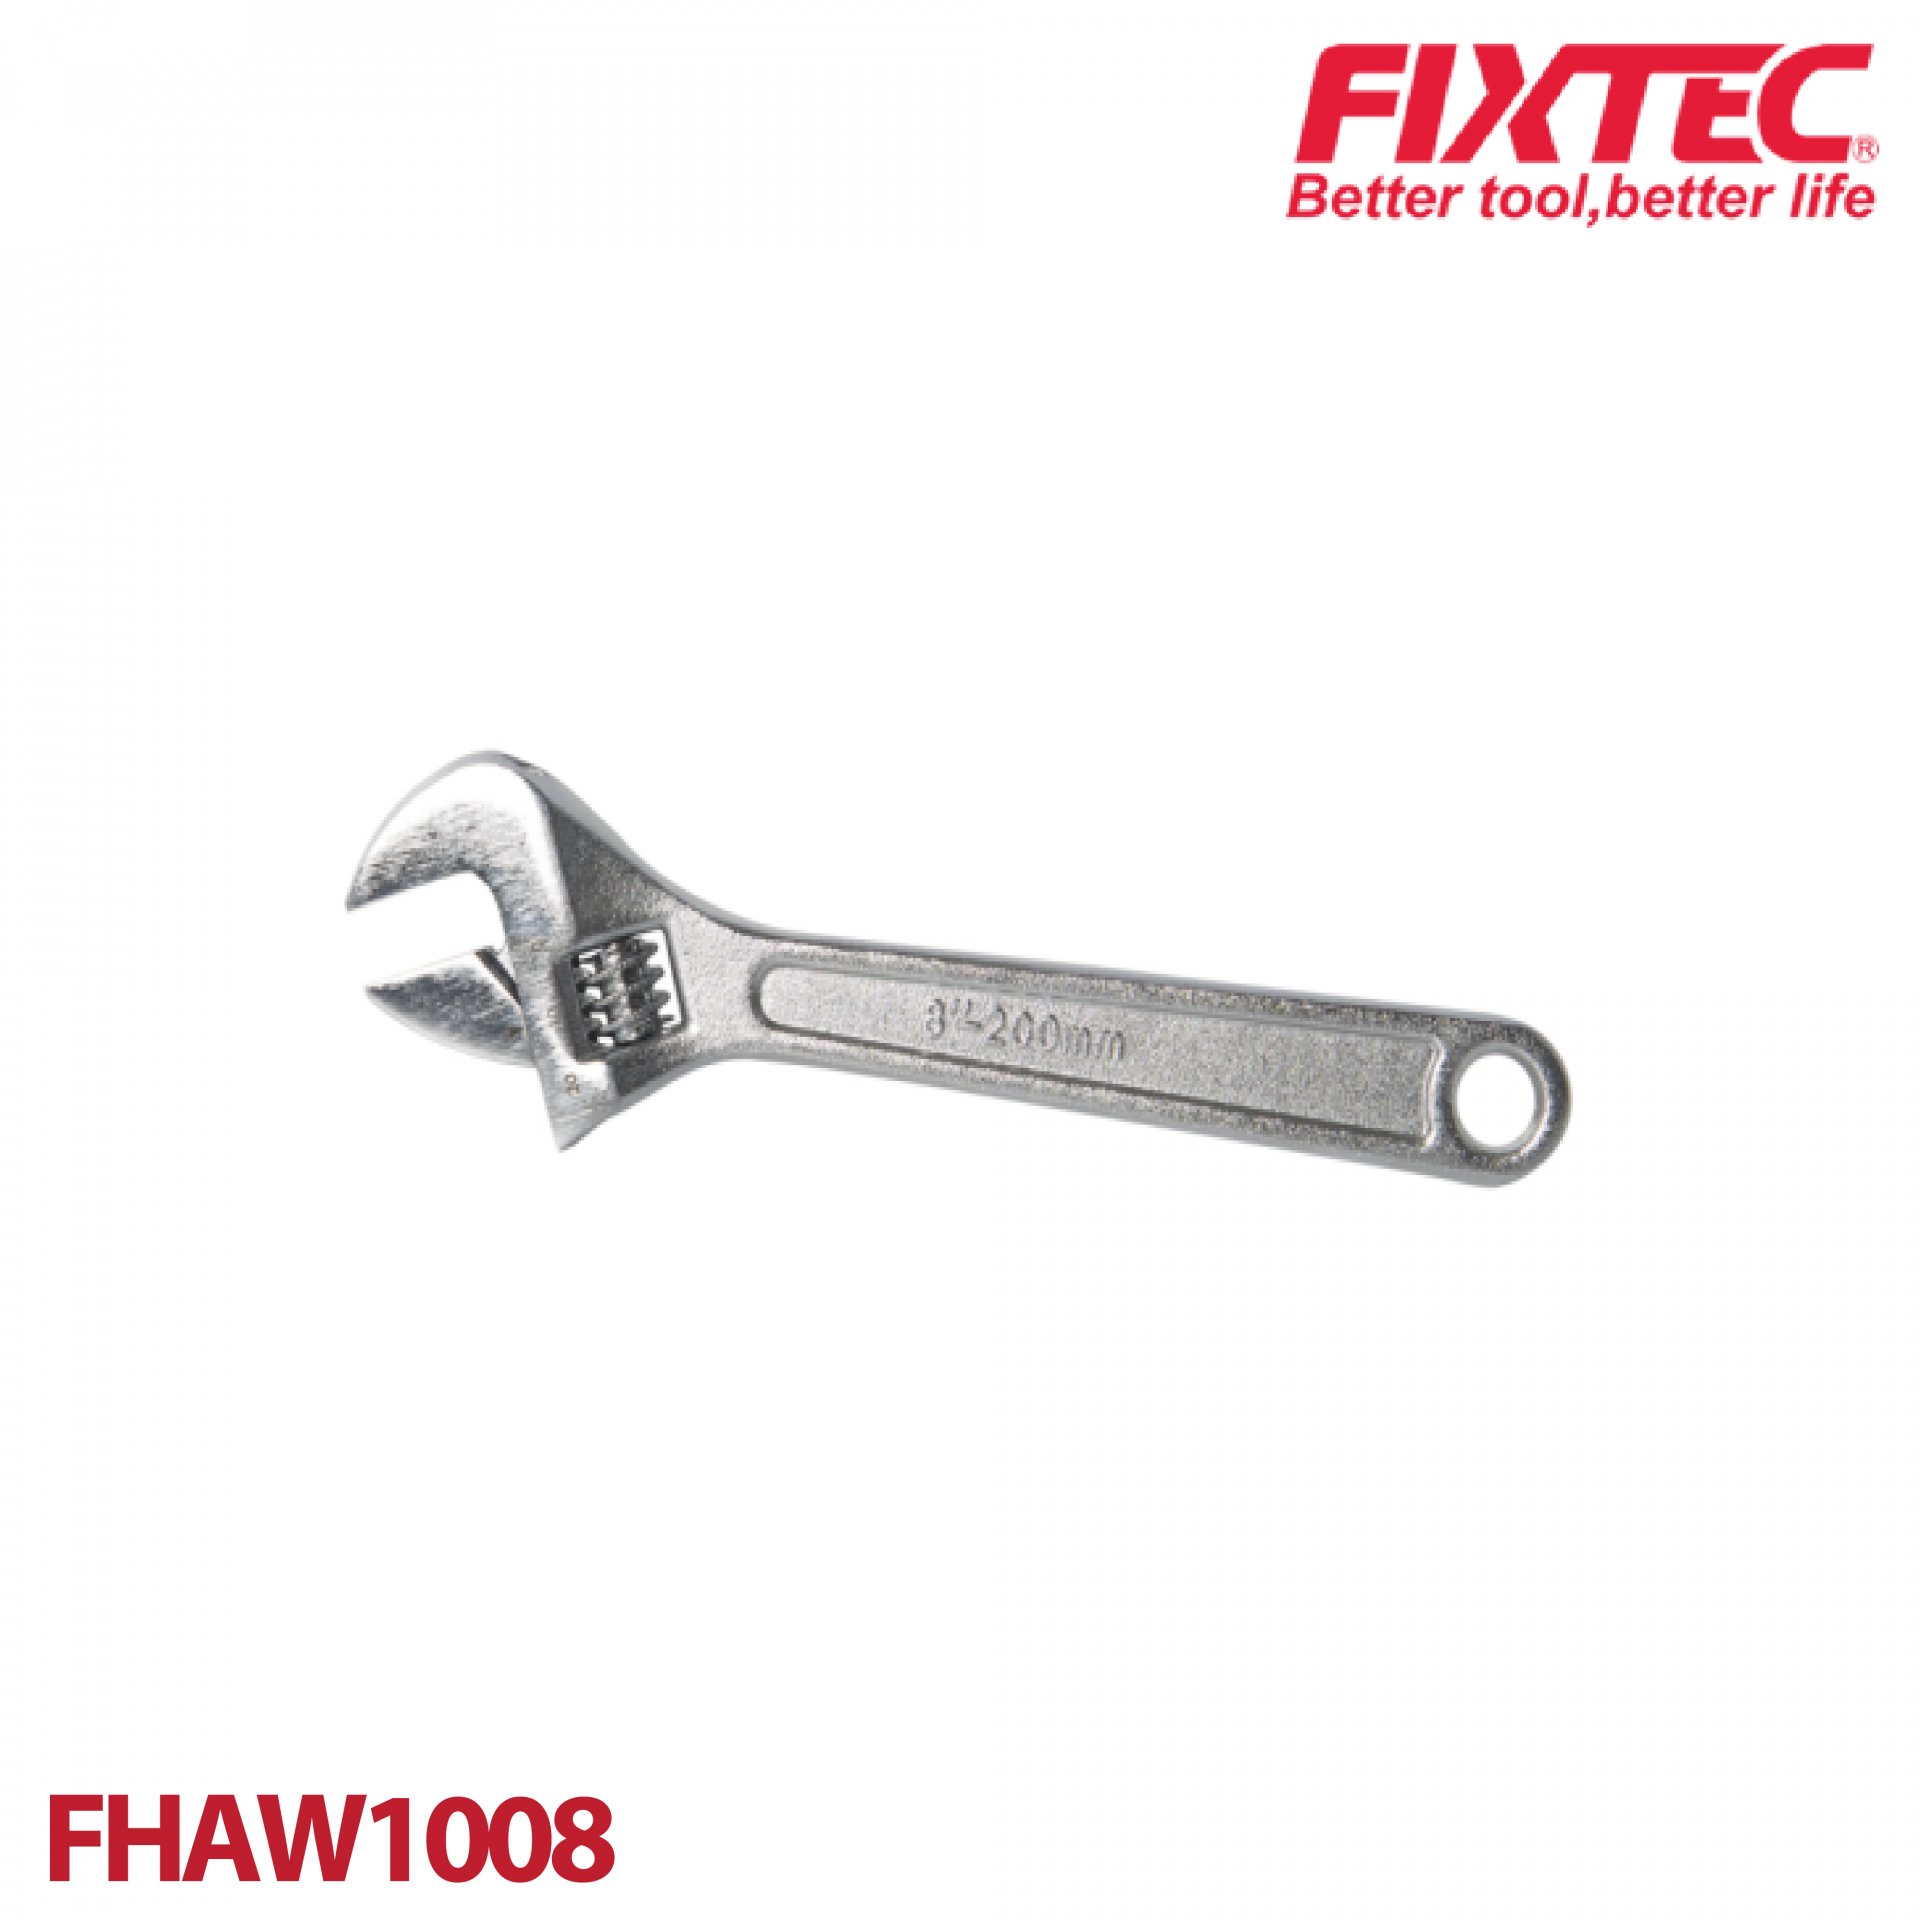 ประแจเลื่อน 8" FIXTEC FHAW1008